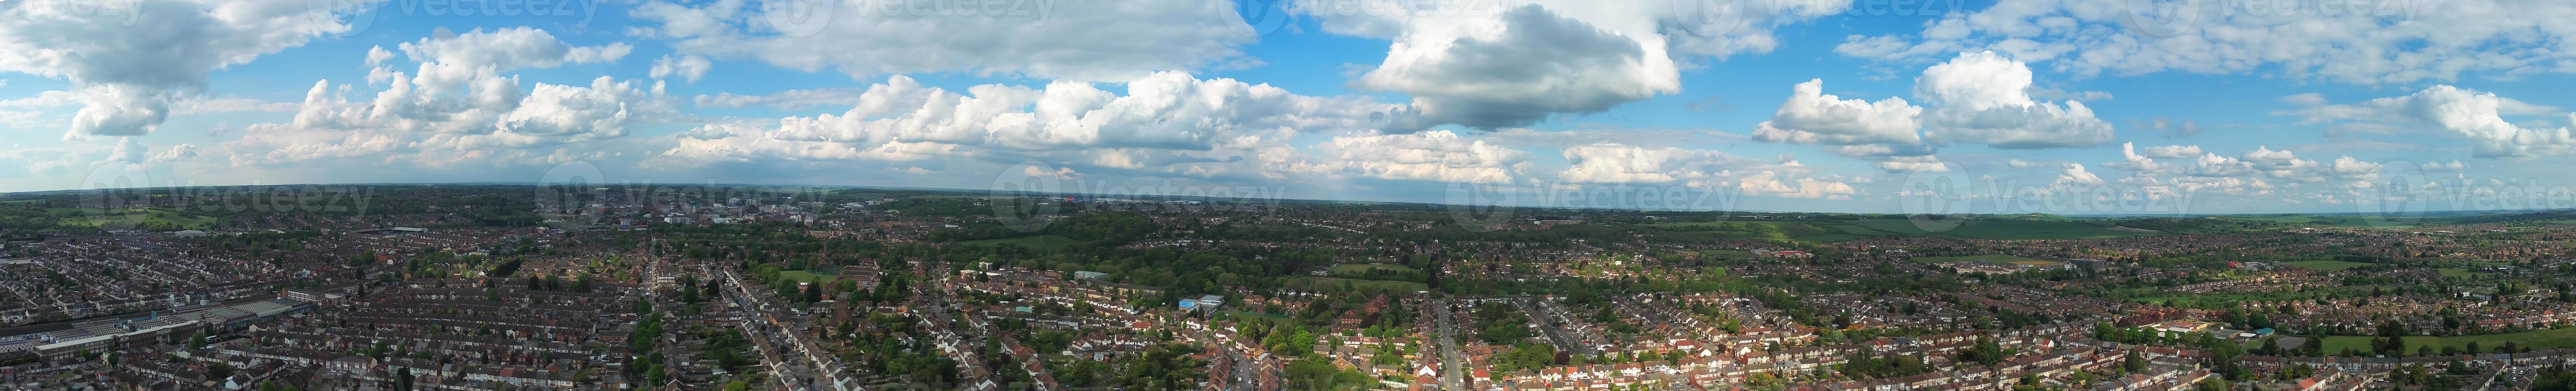 la più bella vista panoramica e riprese aeree dell'Inghilterra, Gran Bretagna foto